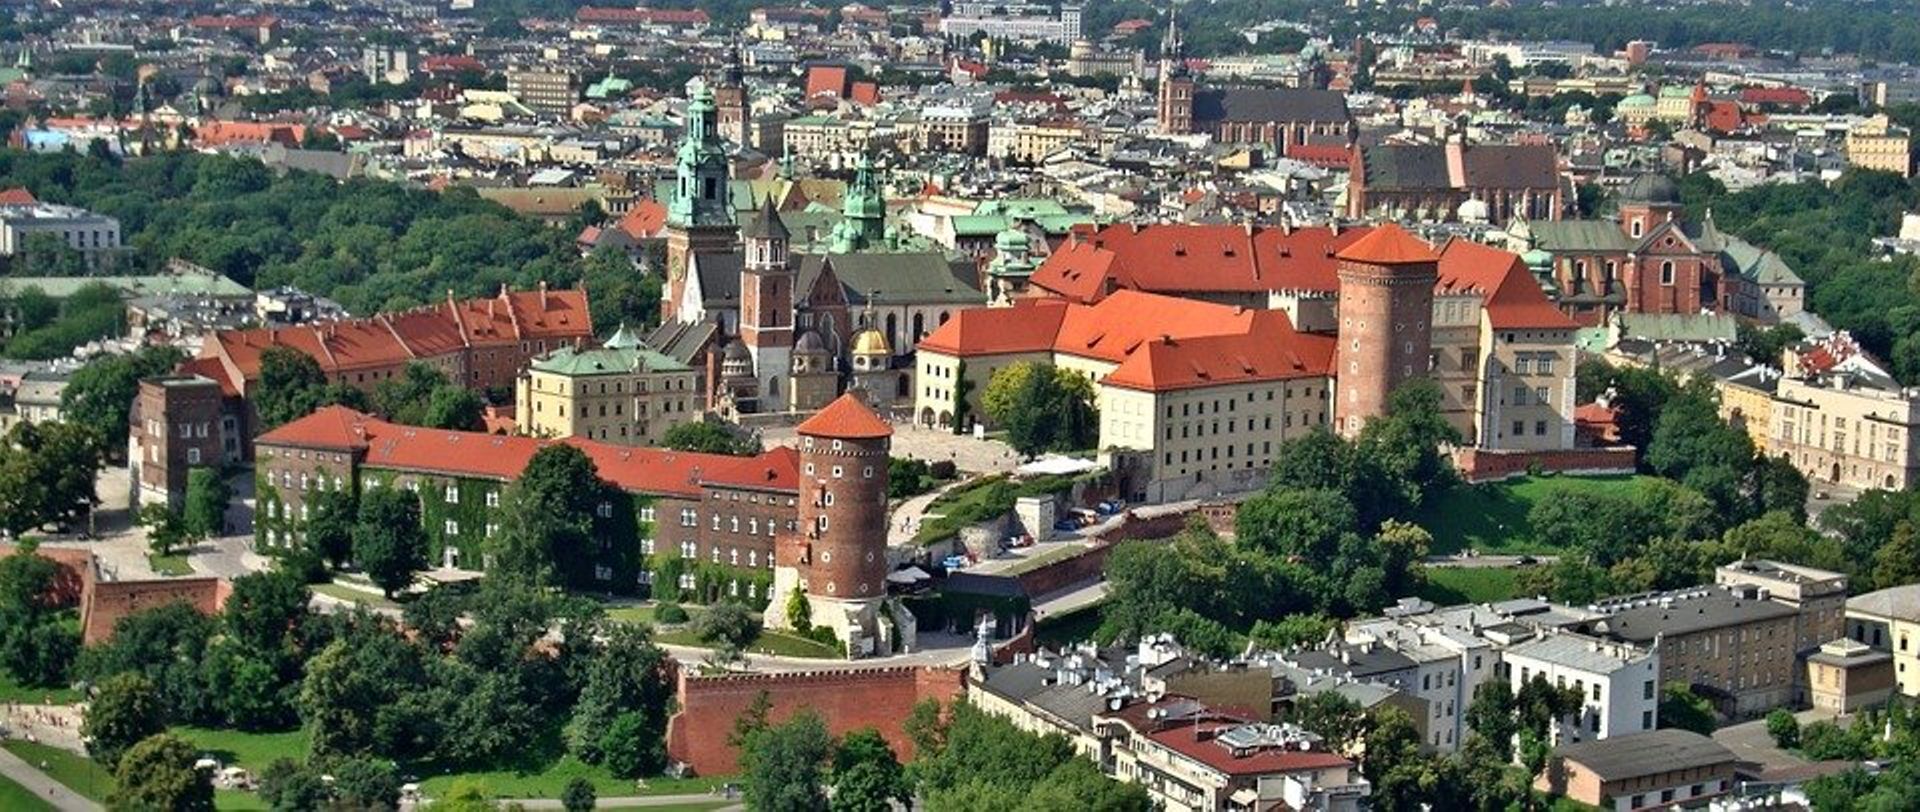 Kraków nadal liderem regionalnych rynków powierzchni biurowych w Polsce